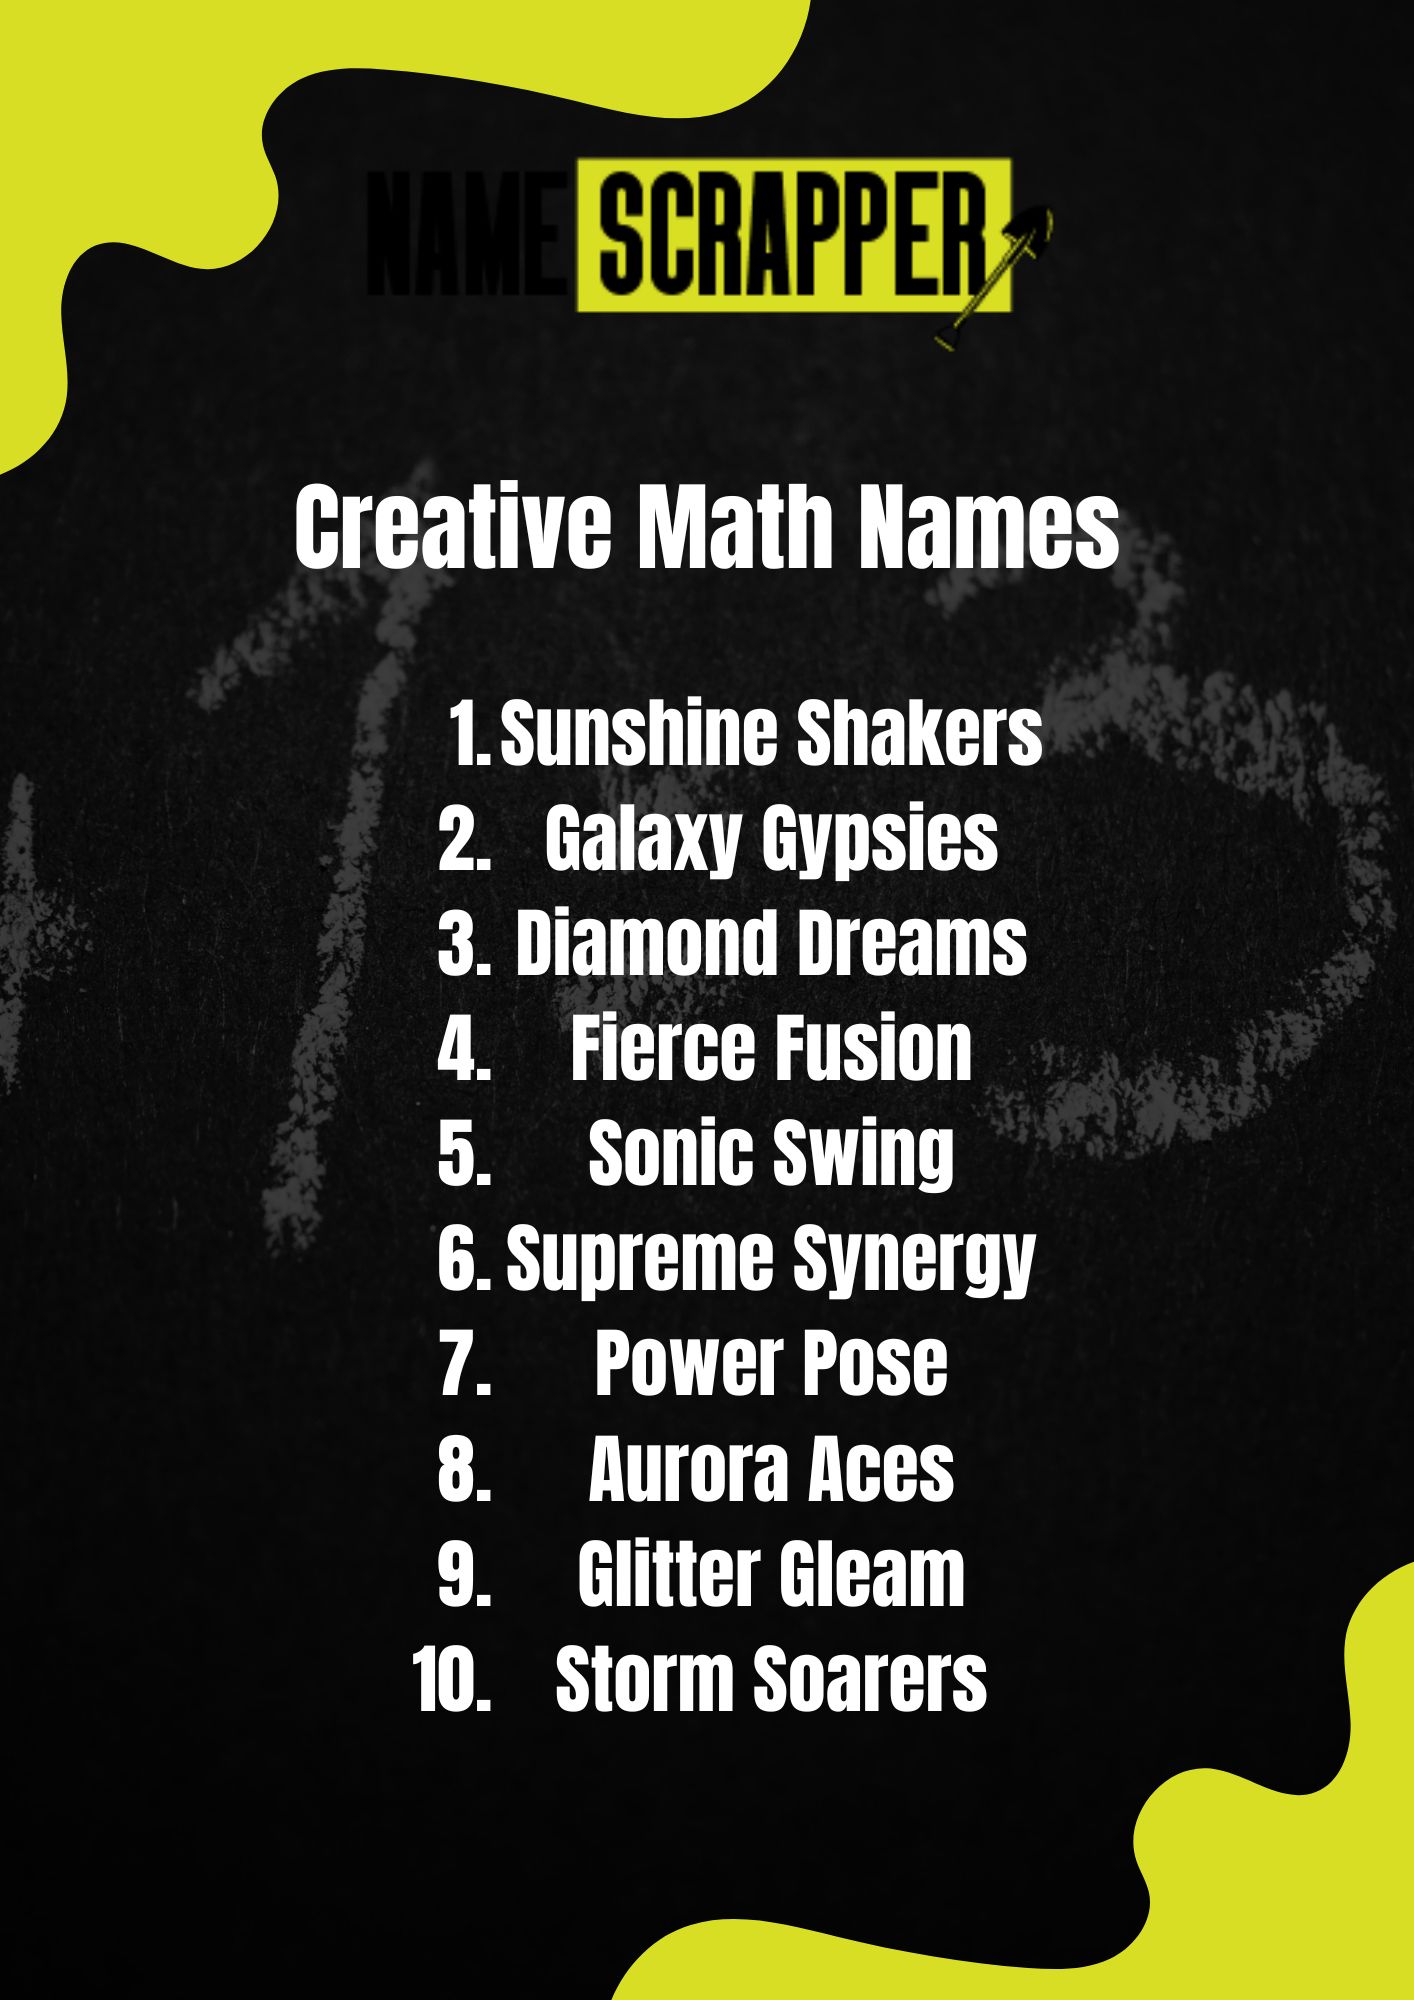 Creative Math Names